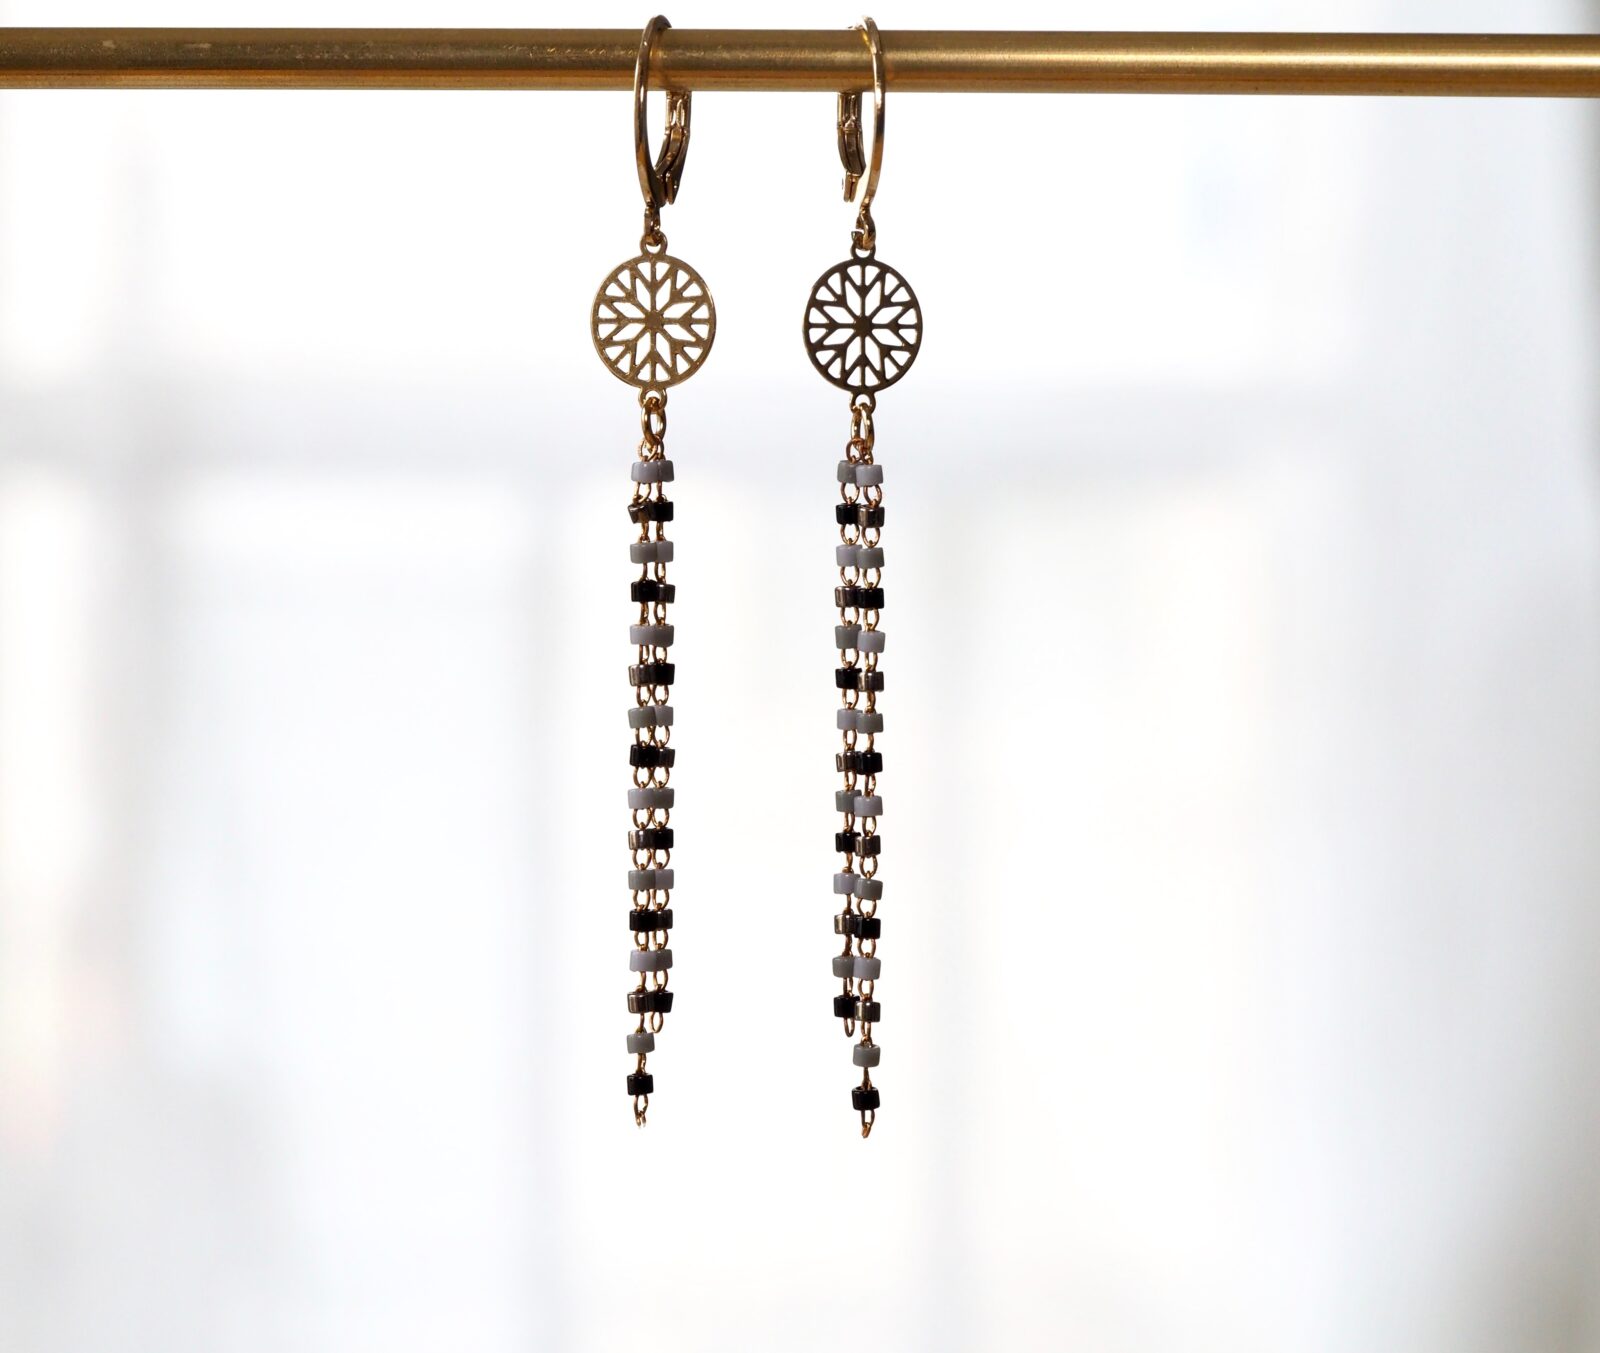 Boucles d'oreilles pendantes délicates, fines estampes dorées à l'or fin, chaînettes composées de petites perles japonaises Miyuki.